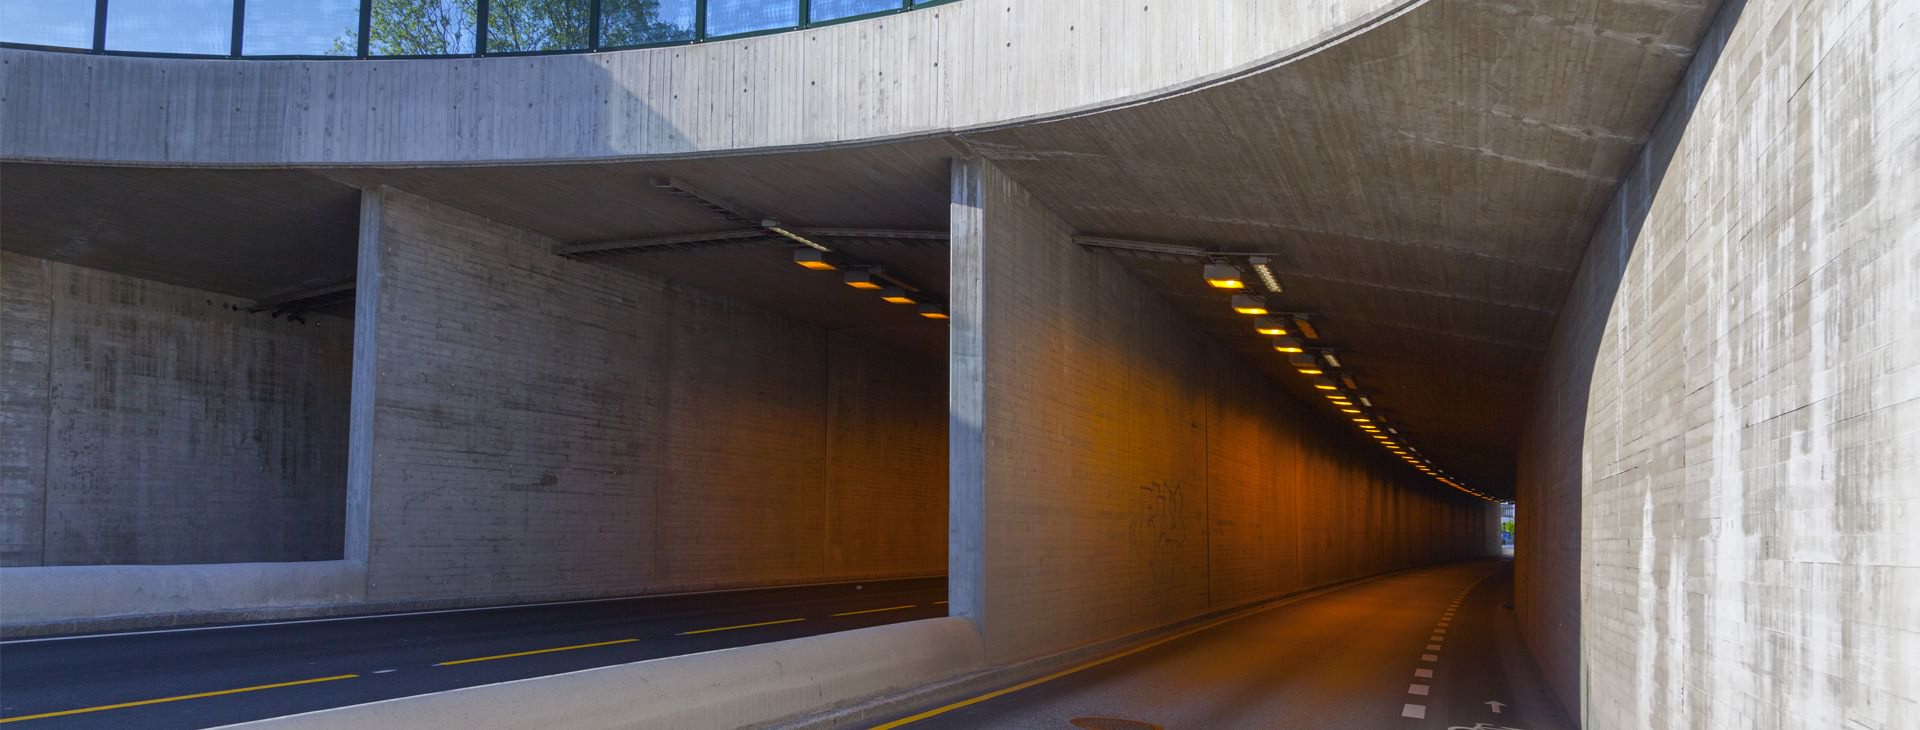 Tunnels - bridges - underpasses